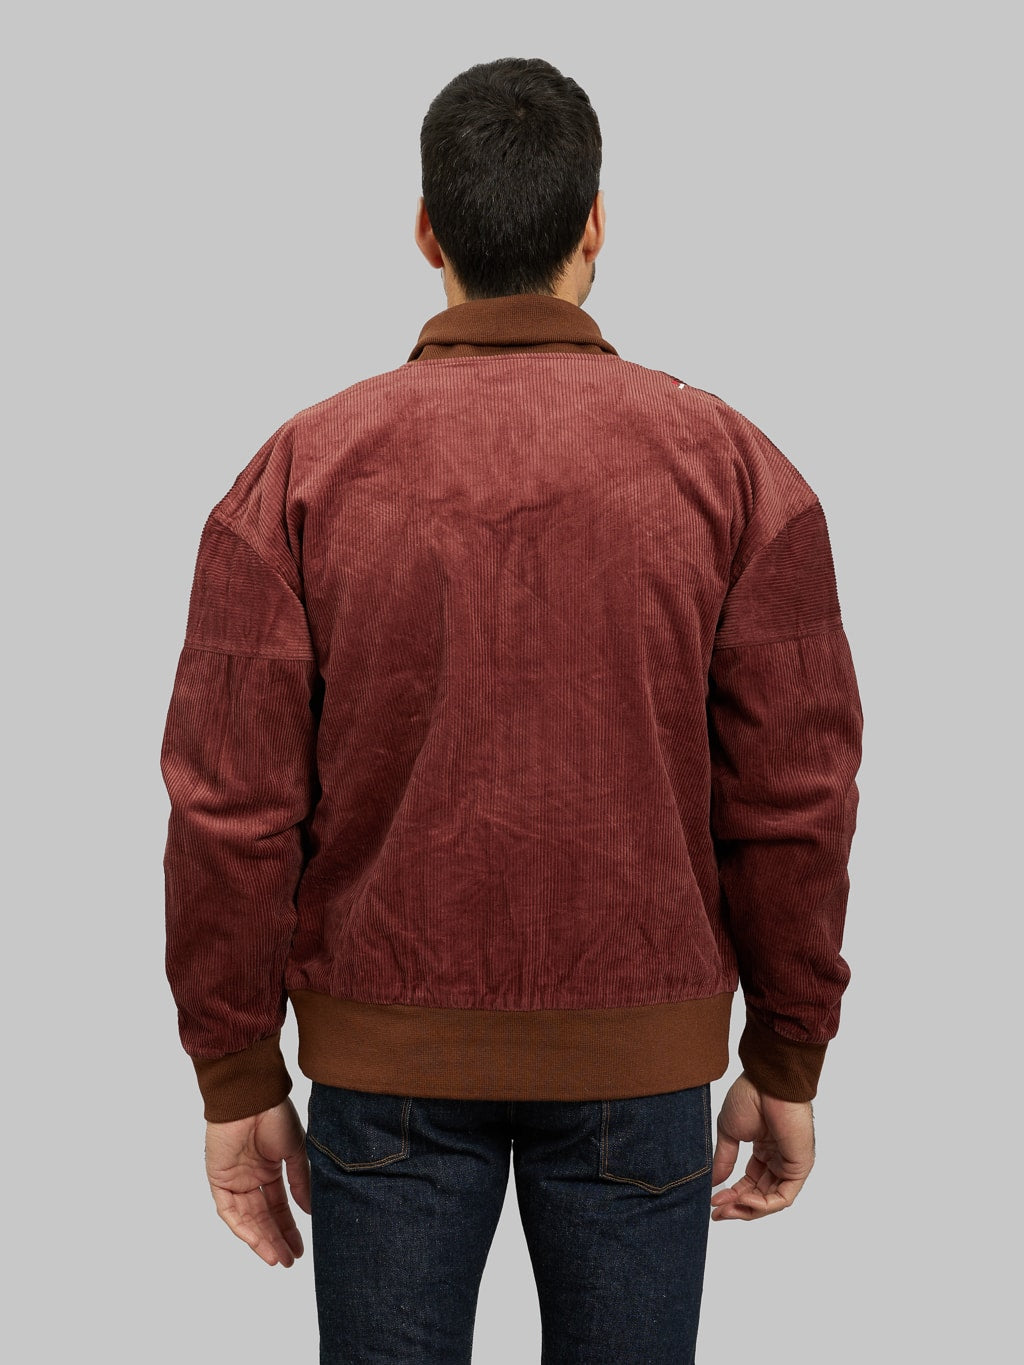 Tanuki Sazanami Corduro mud Dyed brown Jacket model back fit